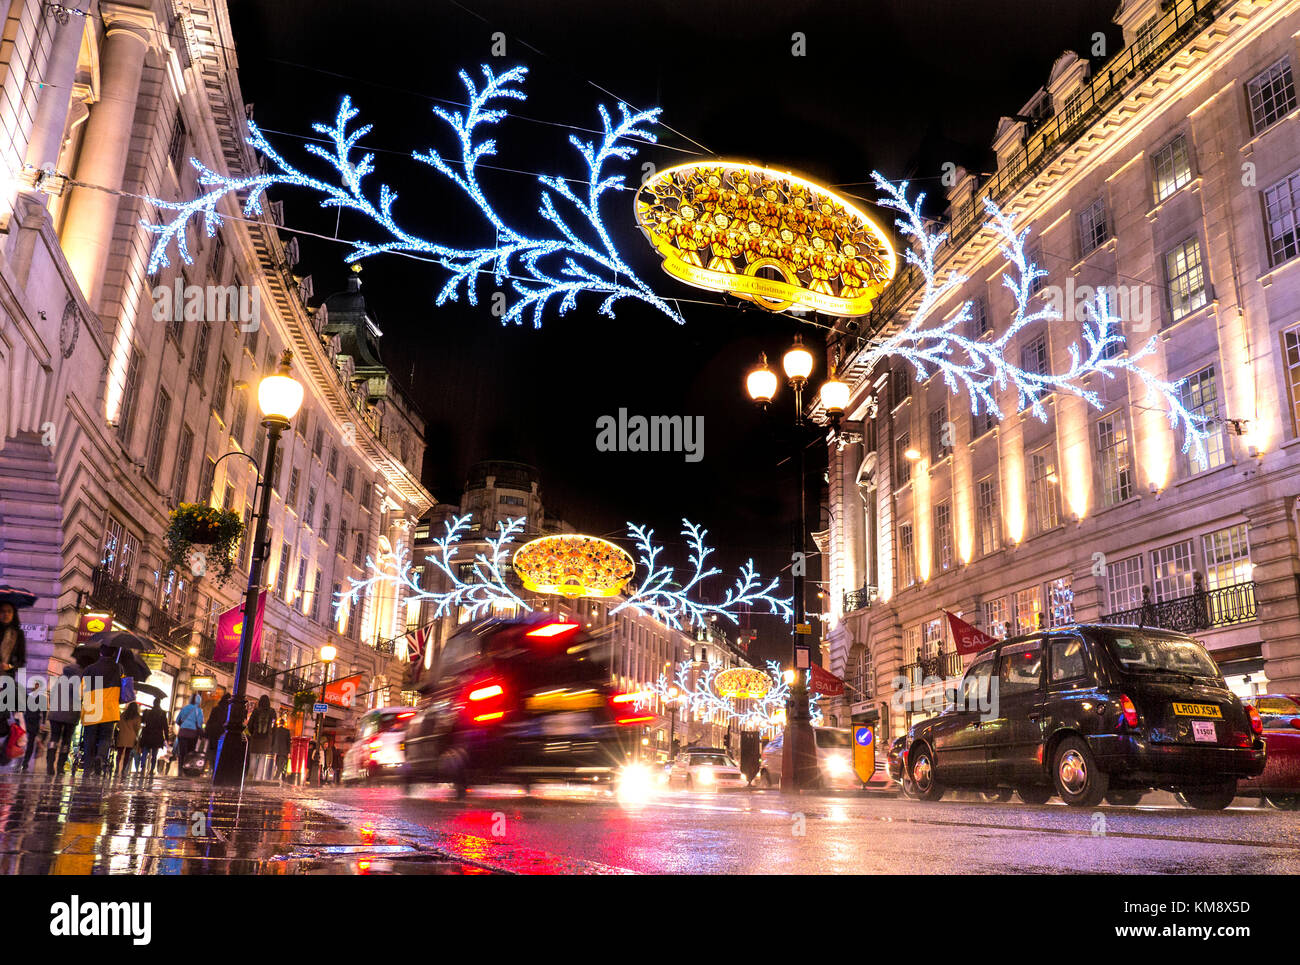 CHRISTMAS SHOPPING REGENT STREET LONDON belebte Szene von Weihnachten Shopper in Regen, traditionellen schwarzen Taxis, Verkehr und Sonnenschirme in einem feuchten reflektierende Regent Street mit Weihnachtsbeleuchtung über und hinter London UK Stockfoto